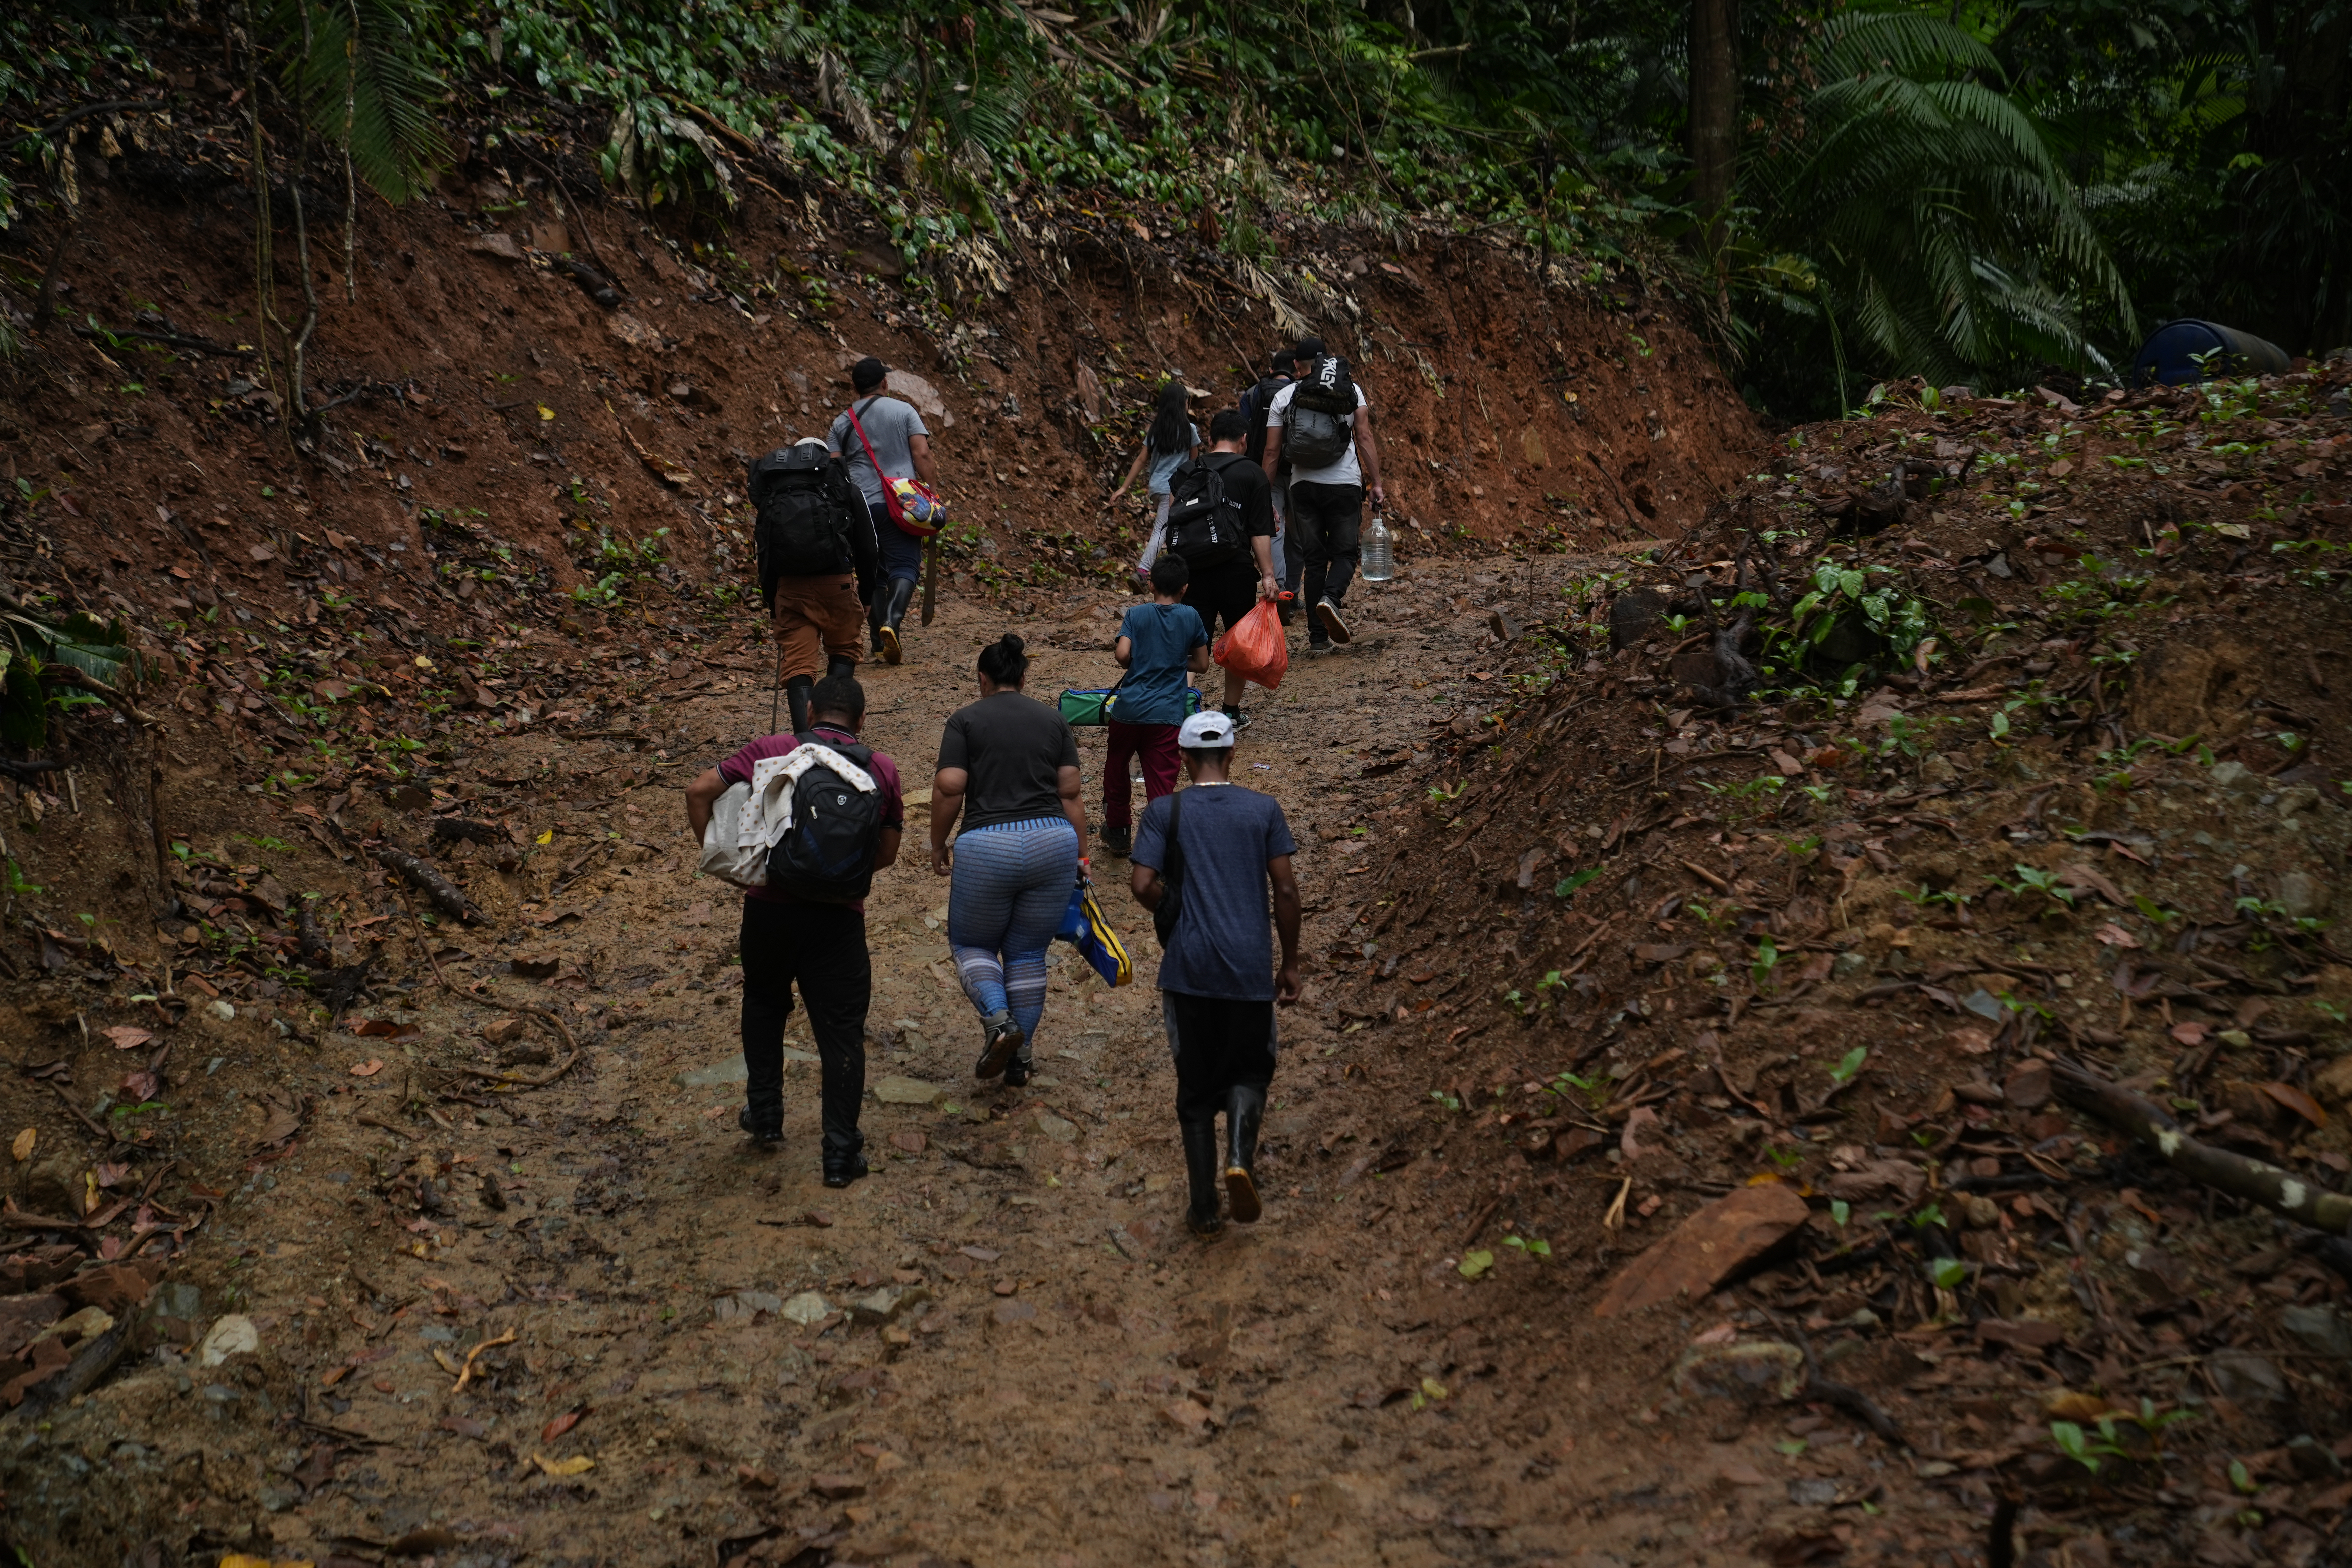 La travesía por caminos empinados supone desgaste físico extremo para los migrantes, a menudo sin calzado apropiado o muy deteriorado, quienes se desplazan por horas diariamente. (Foto: GSR/Manuel Rueda)